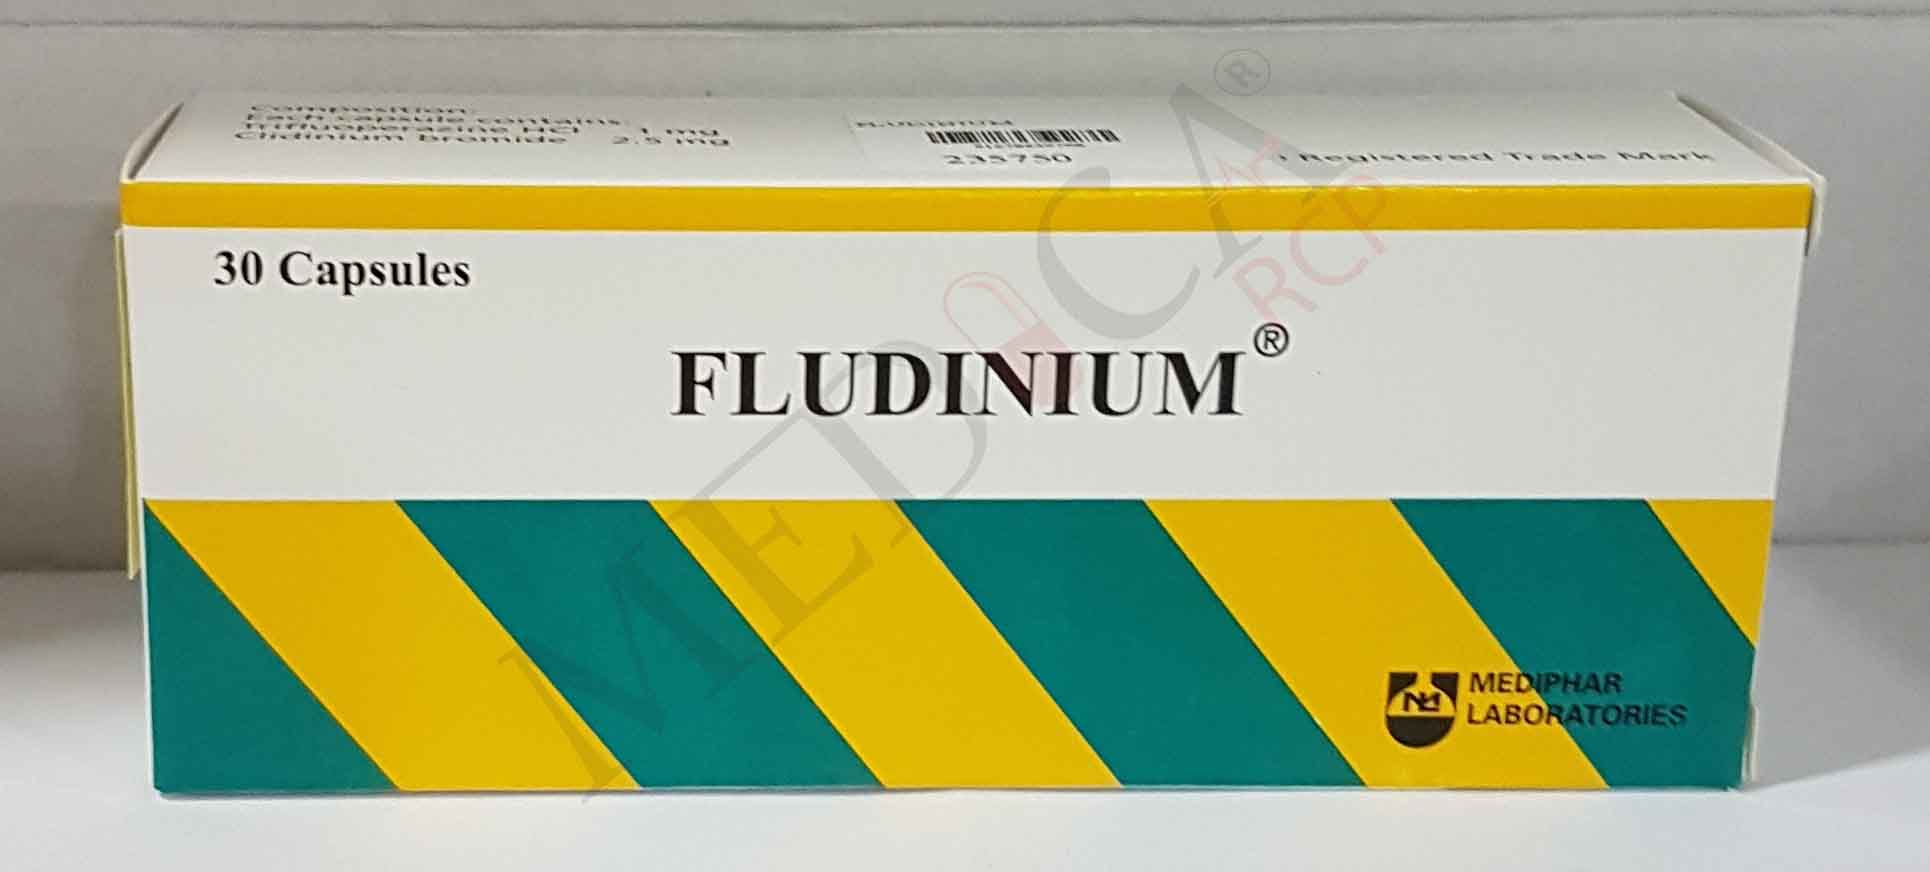 Fludinium